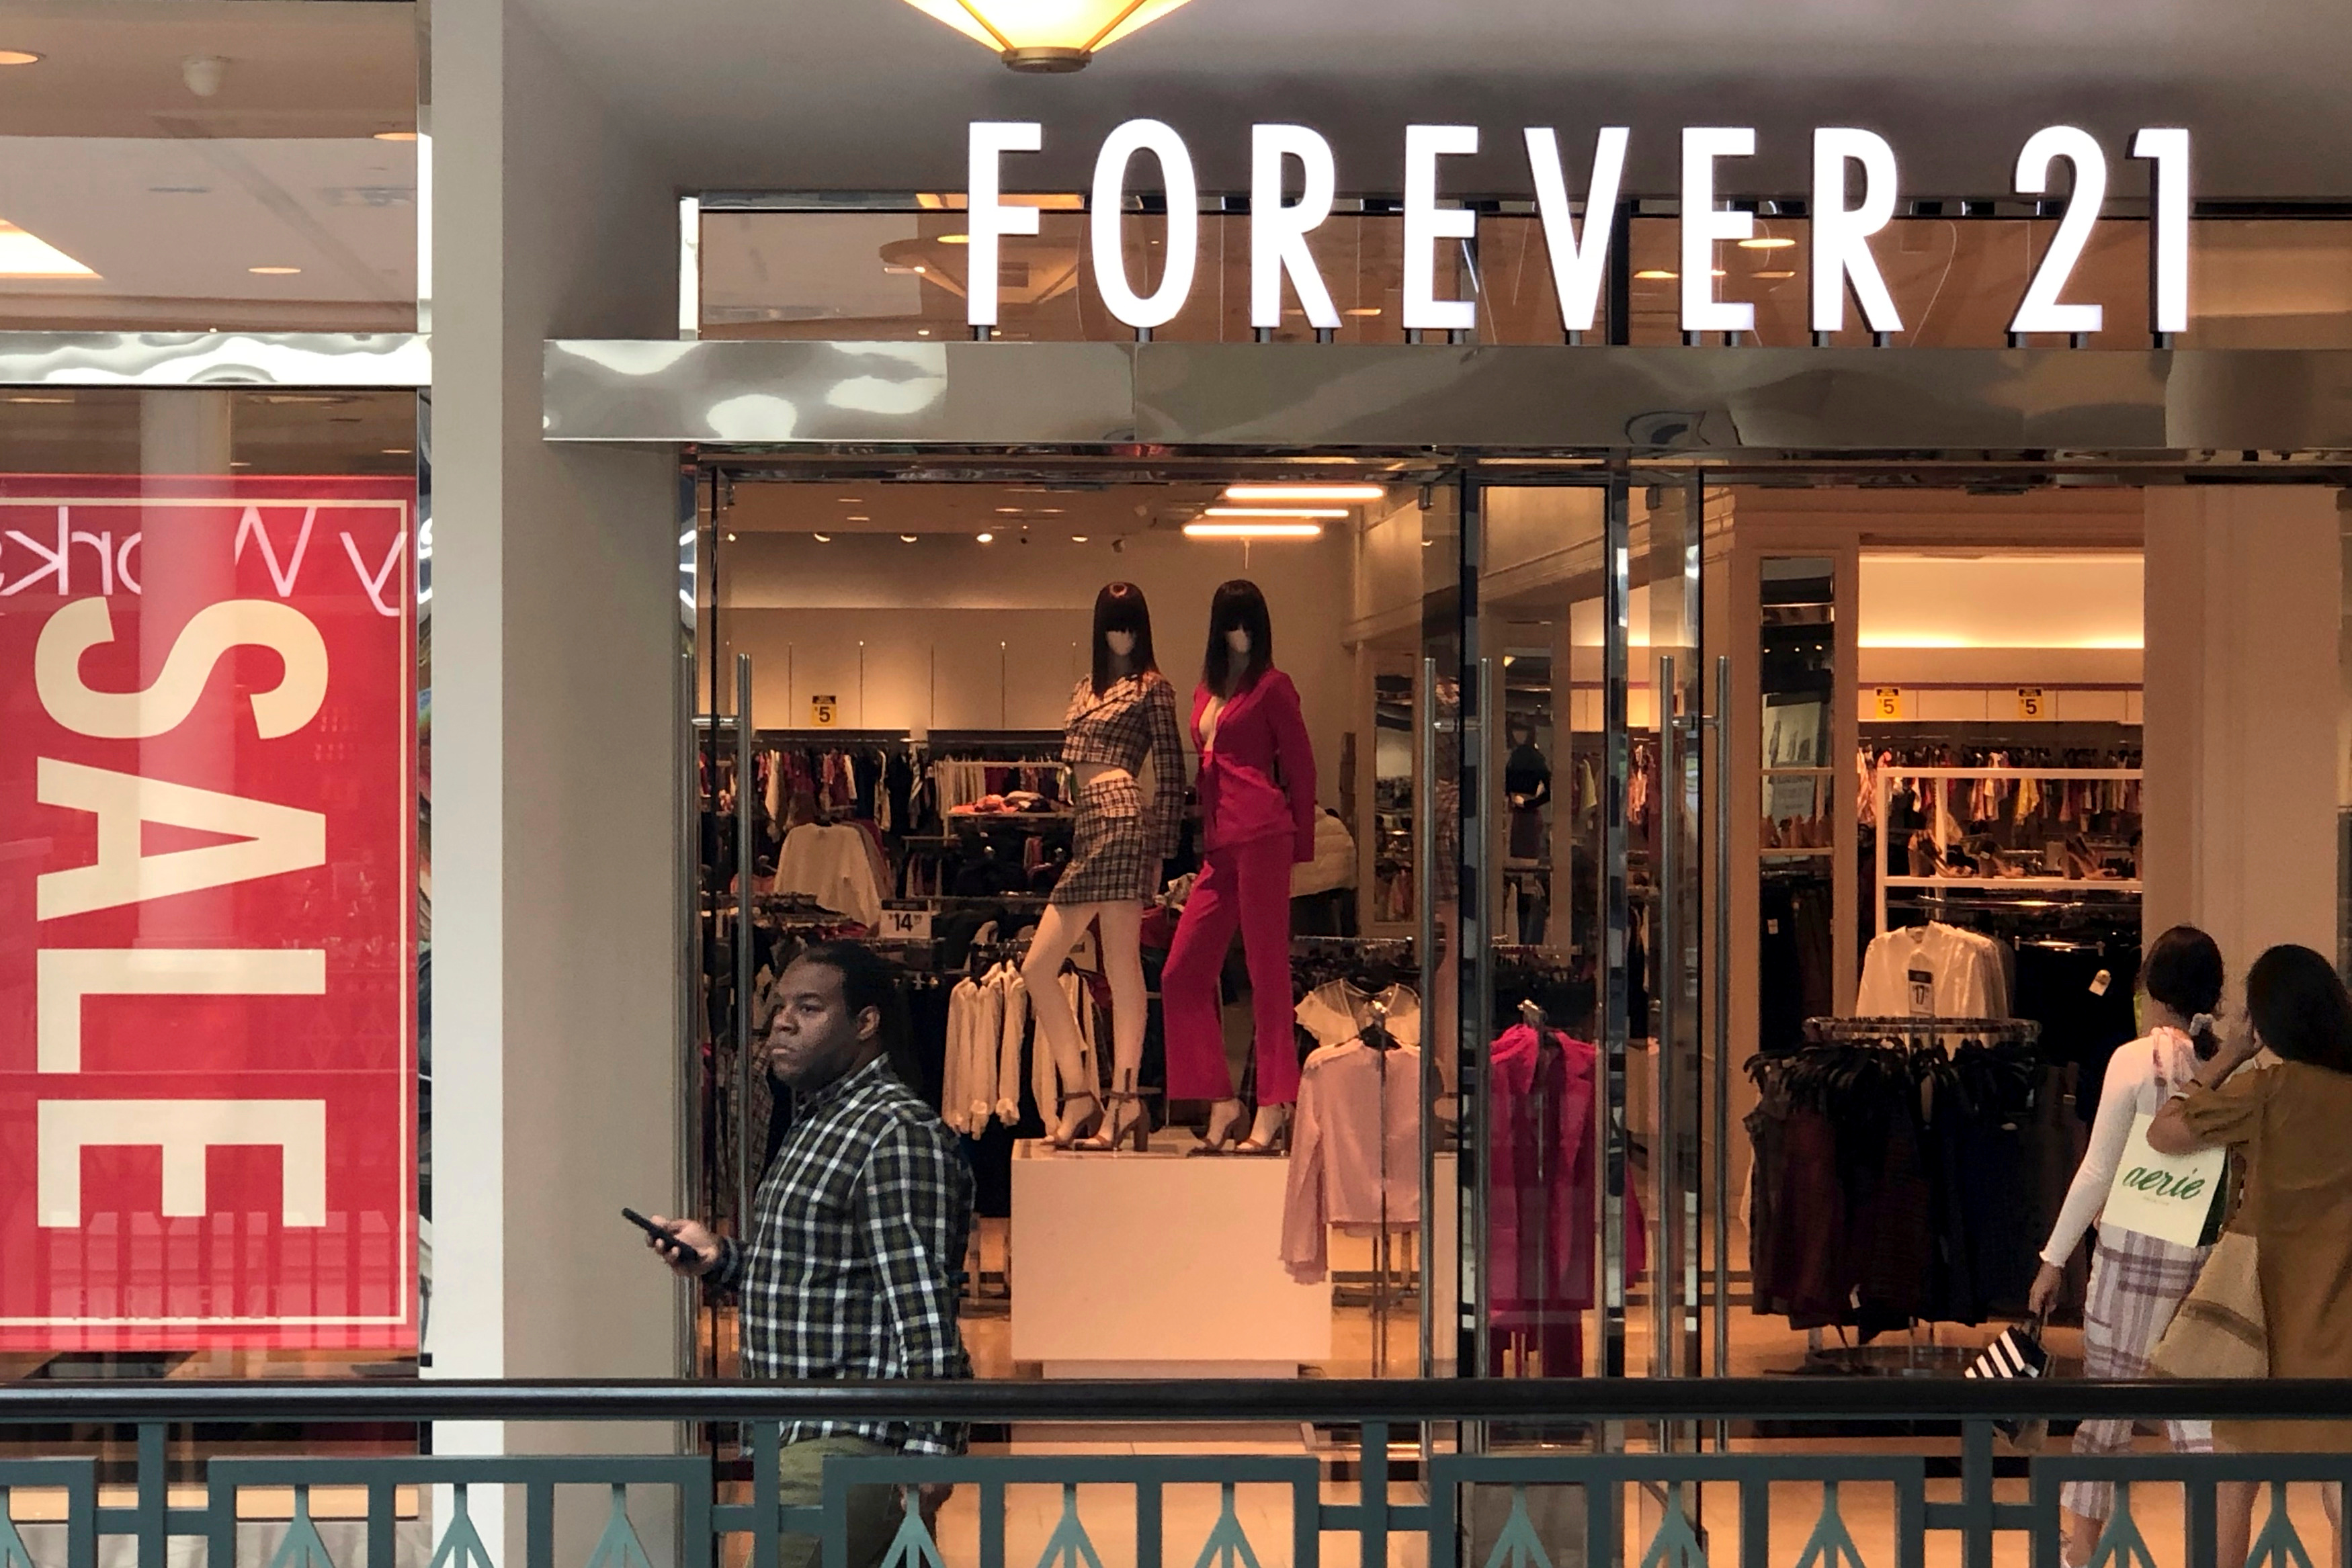 Vista panorâmica de uma loja Forever 21 — Fotografia de Stock Editorial ©  mandritoiu #215665294